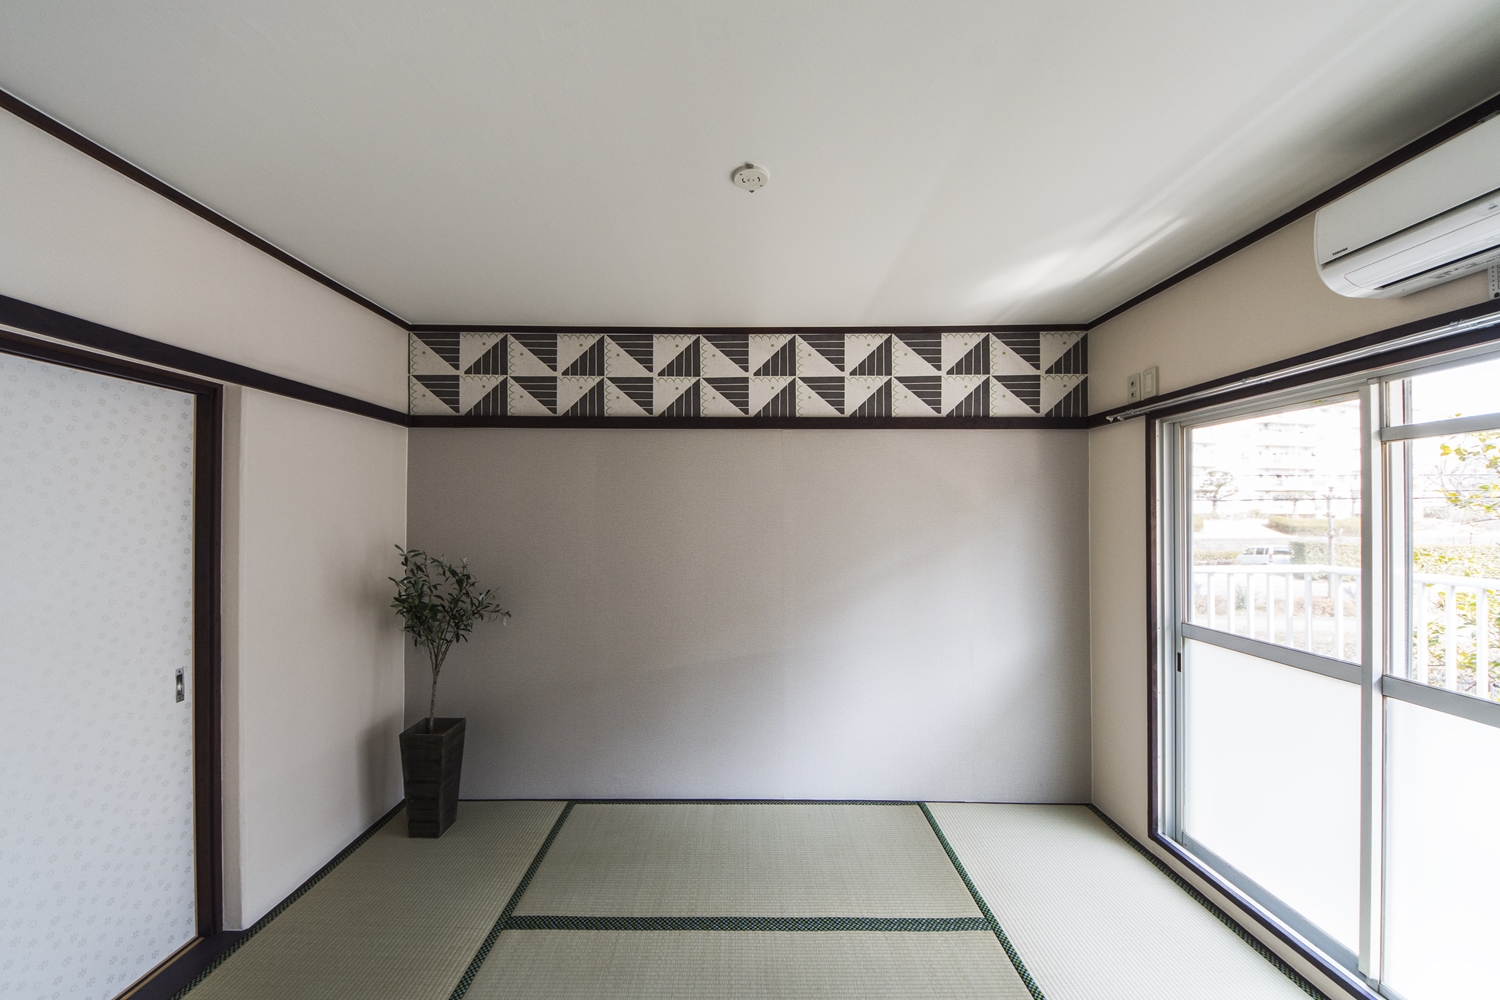 和室①／竹久夢二デザインの壁紙を取入れた大正ロマン風のネオレトロな空間に。